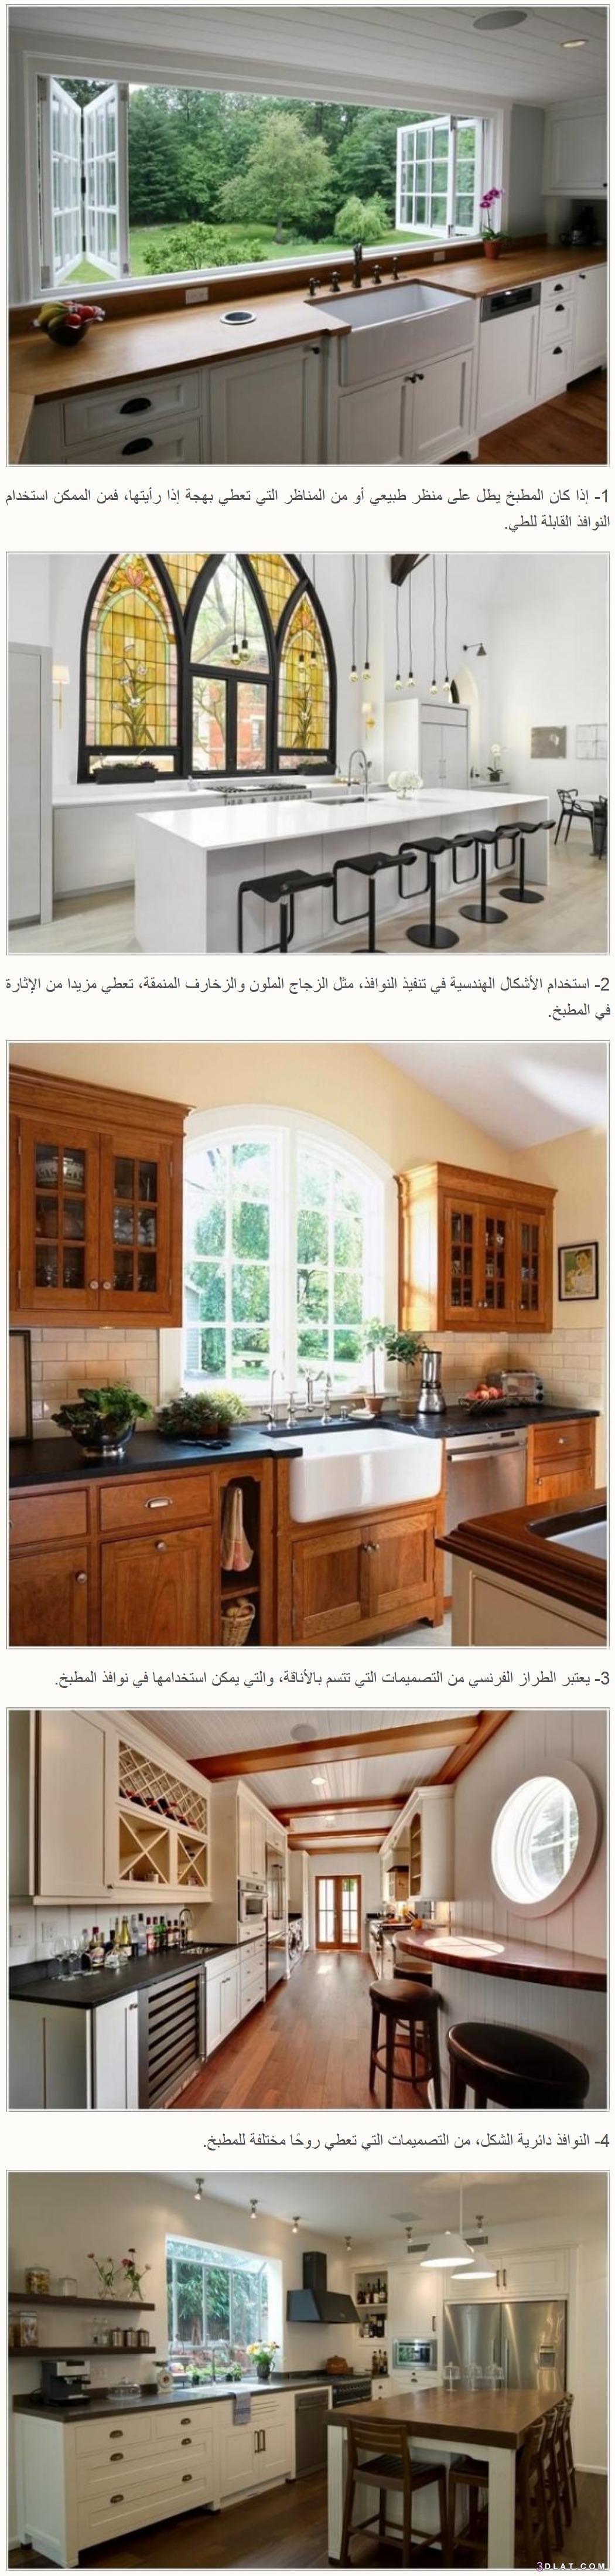 بالصور  أفكار مختلفة لتصميم مبتكر لنوافذ المطبخ